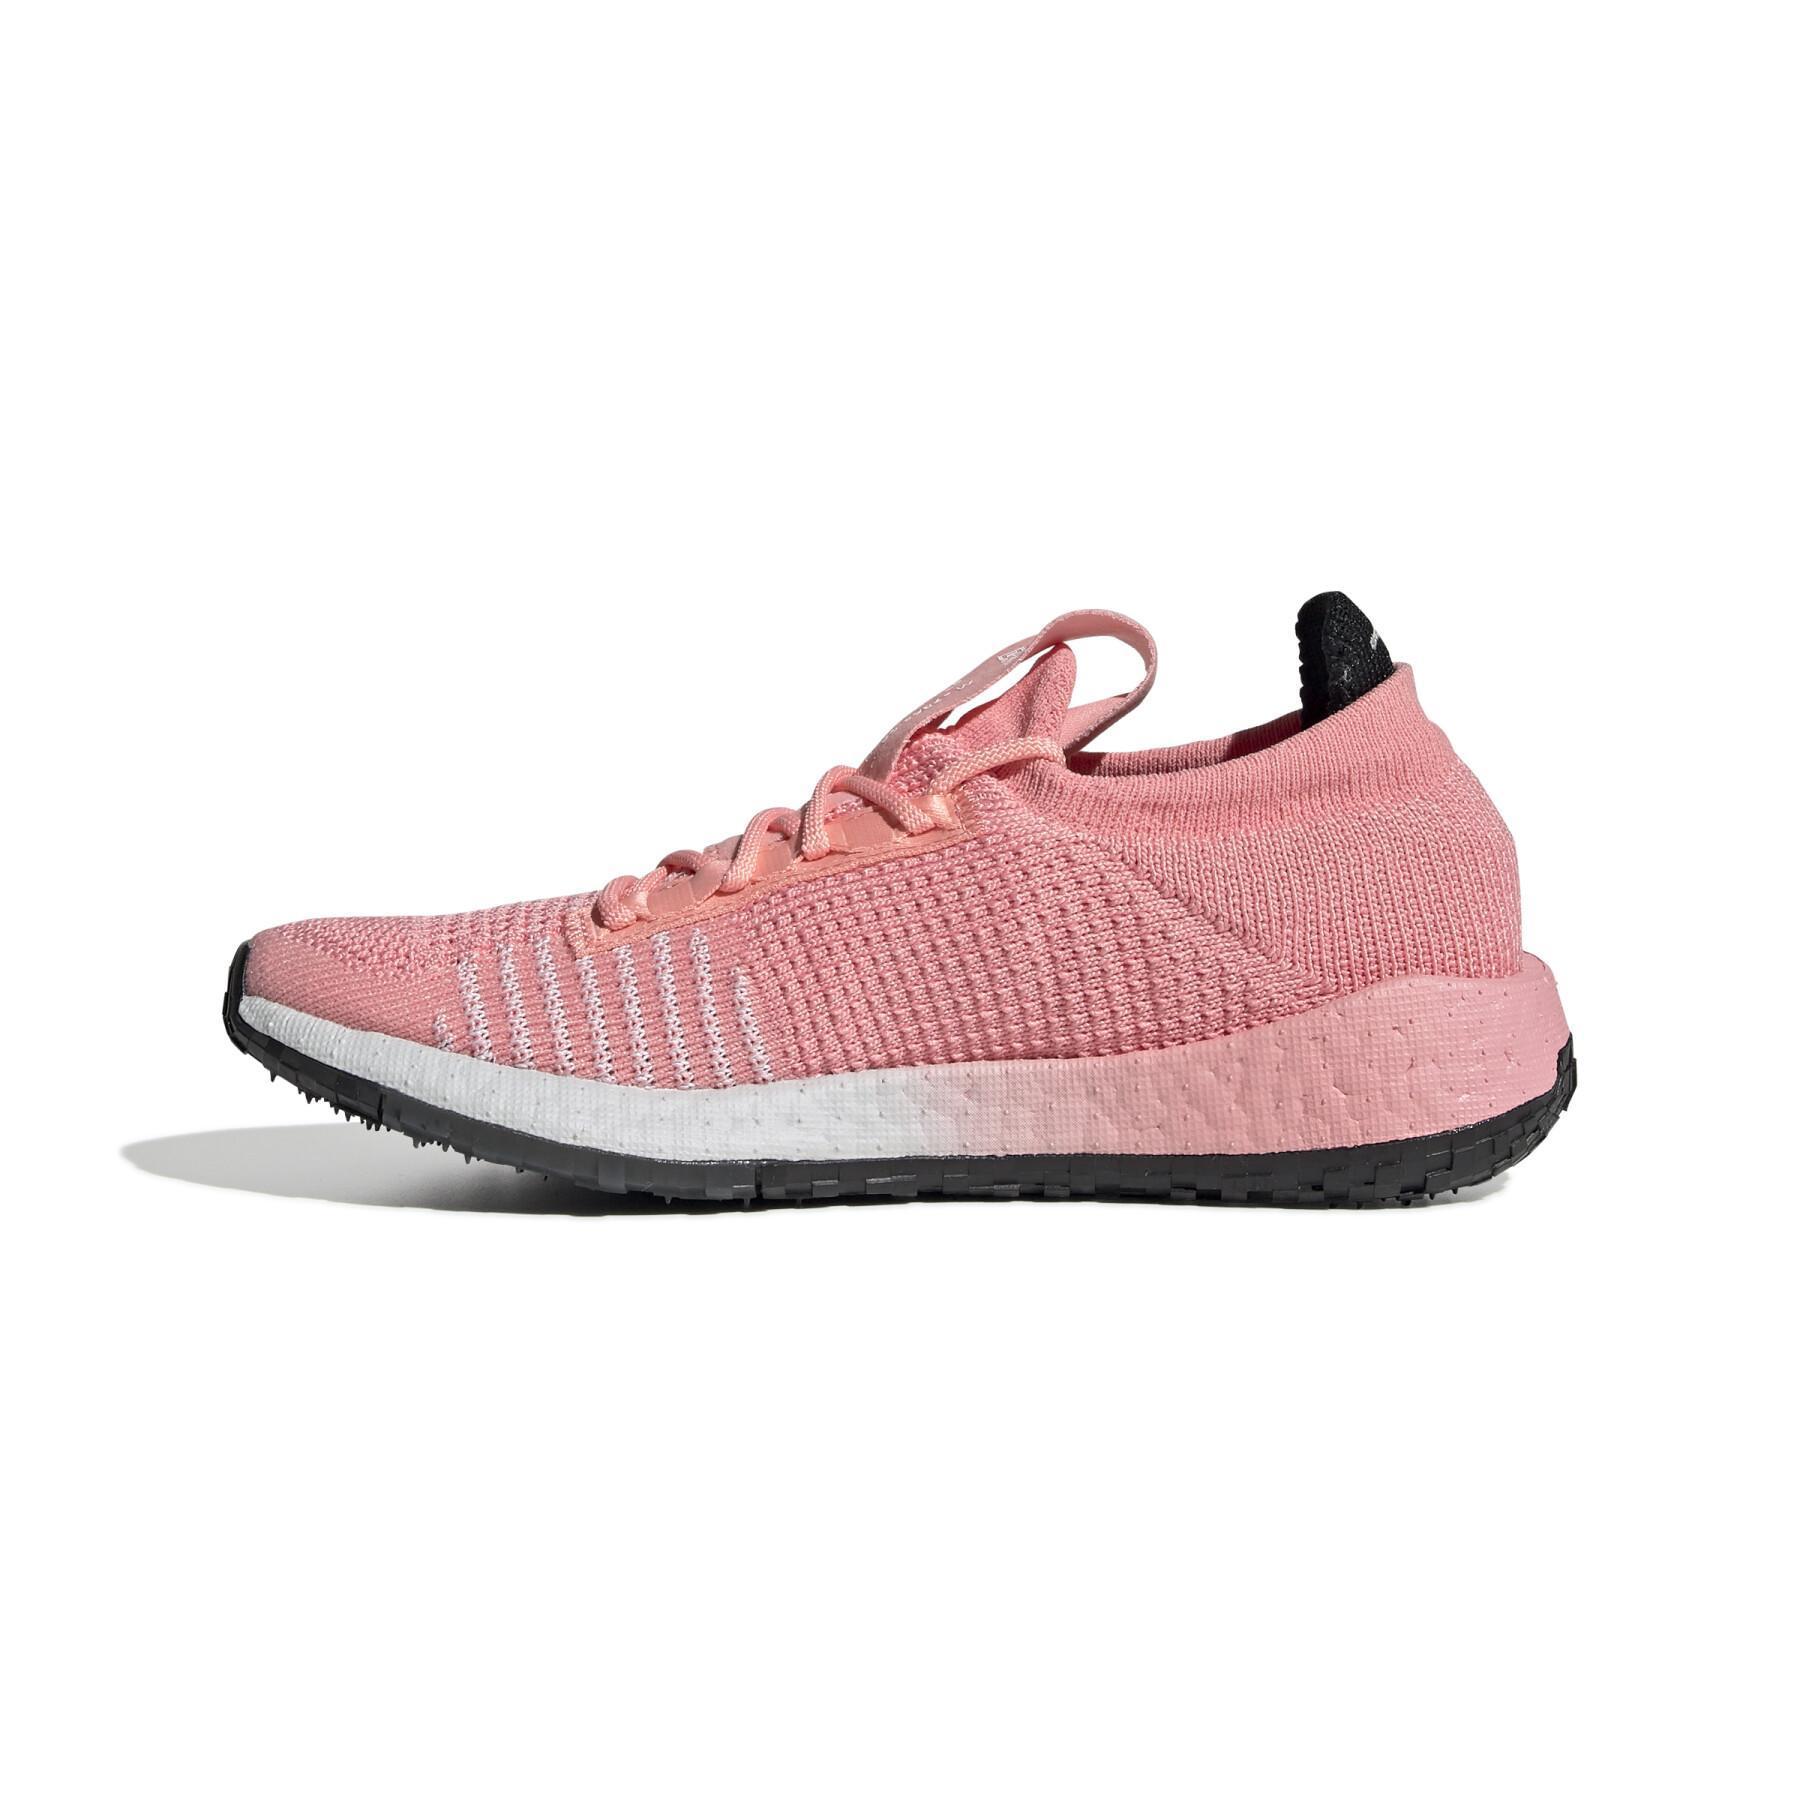 Chaussures de running femme adidas Pulseboost HD